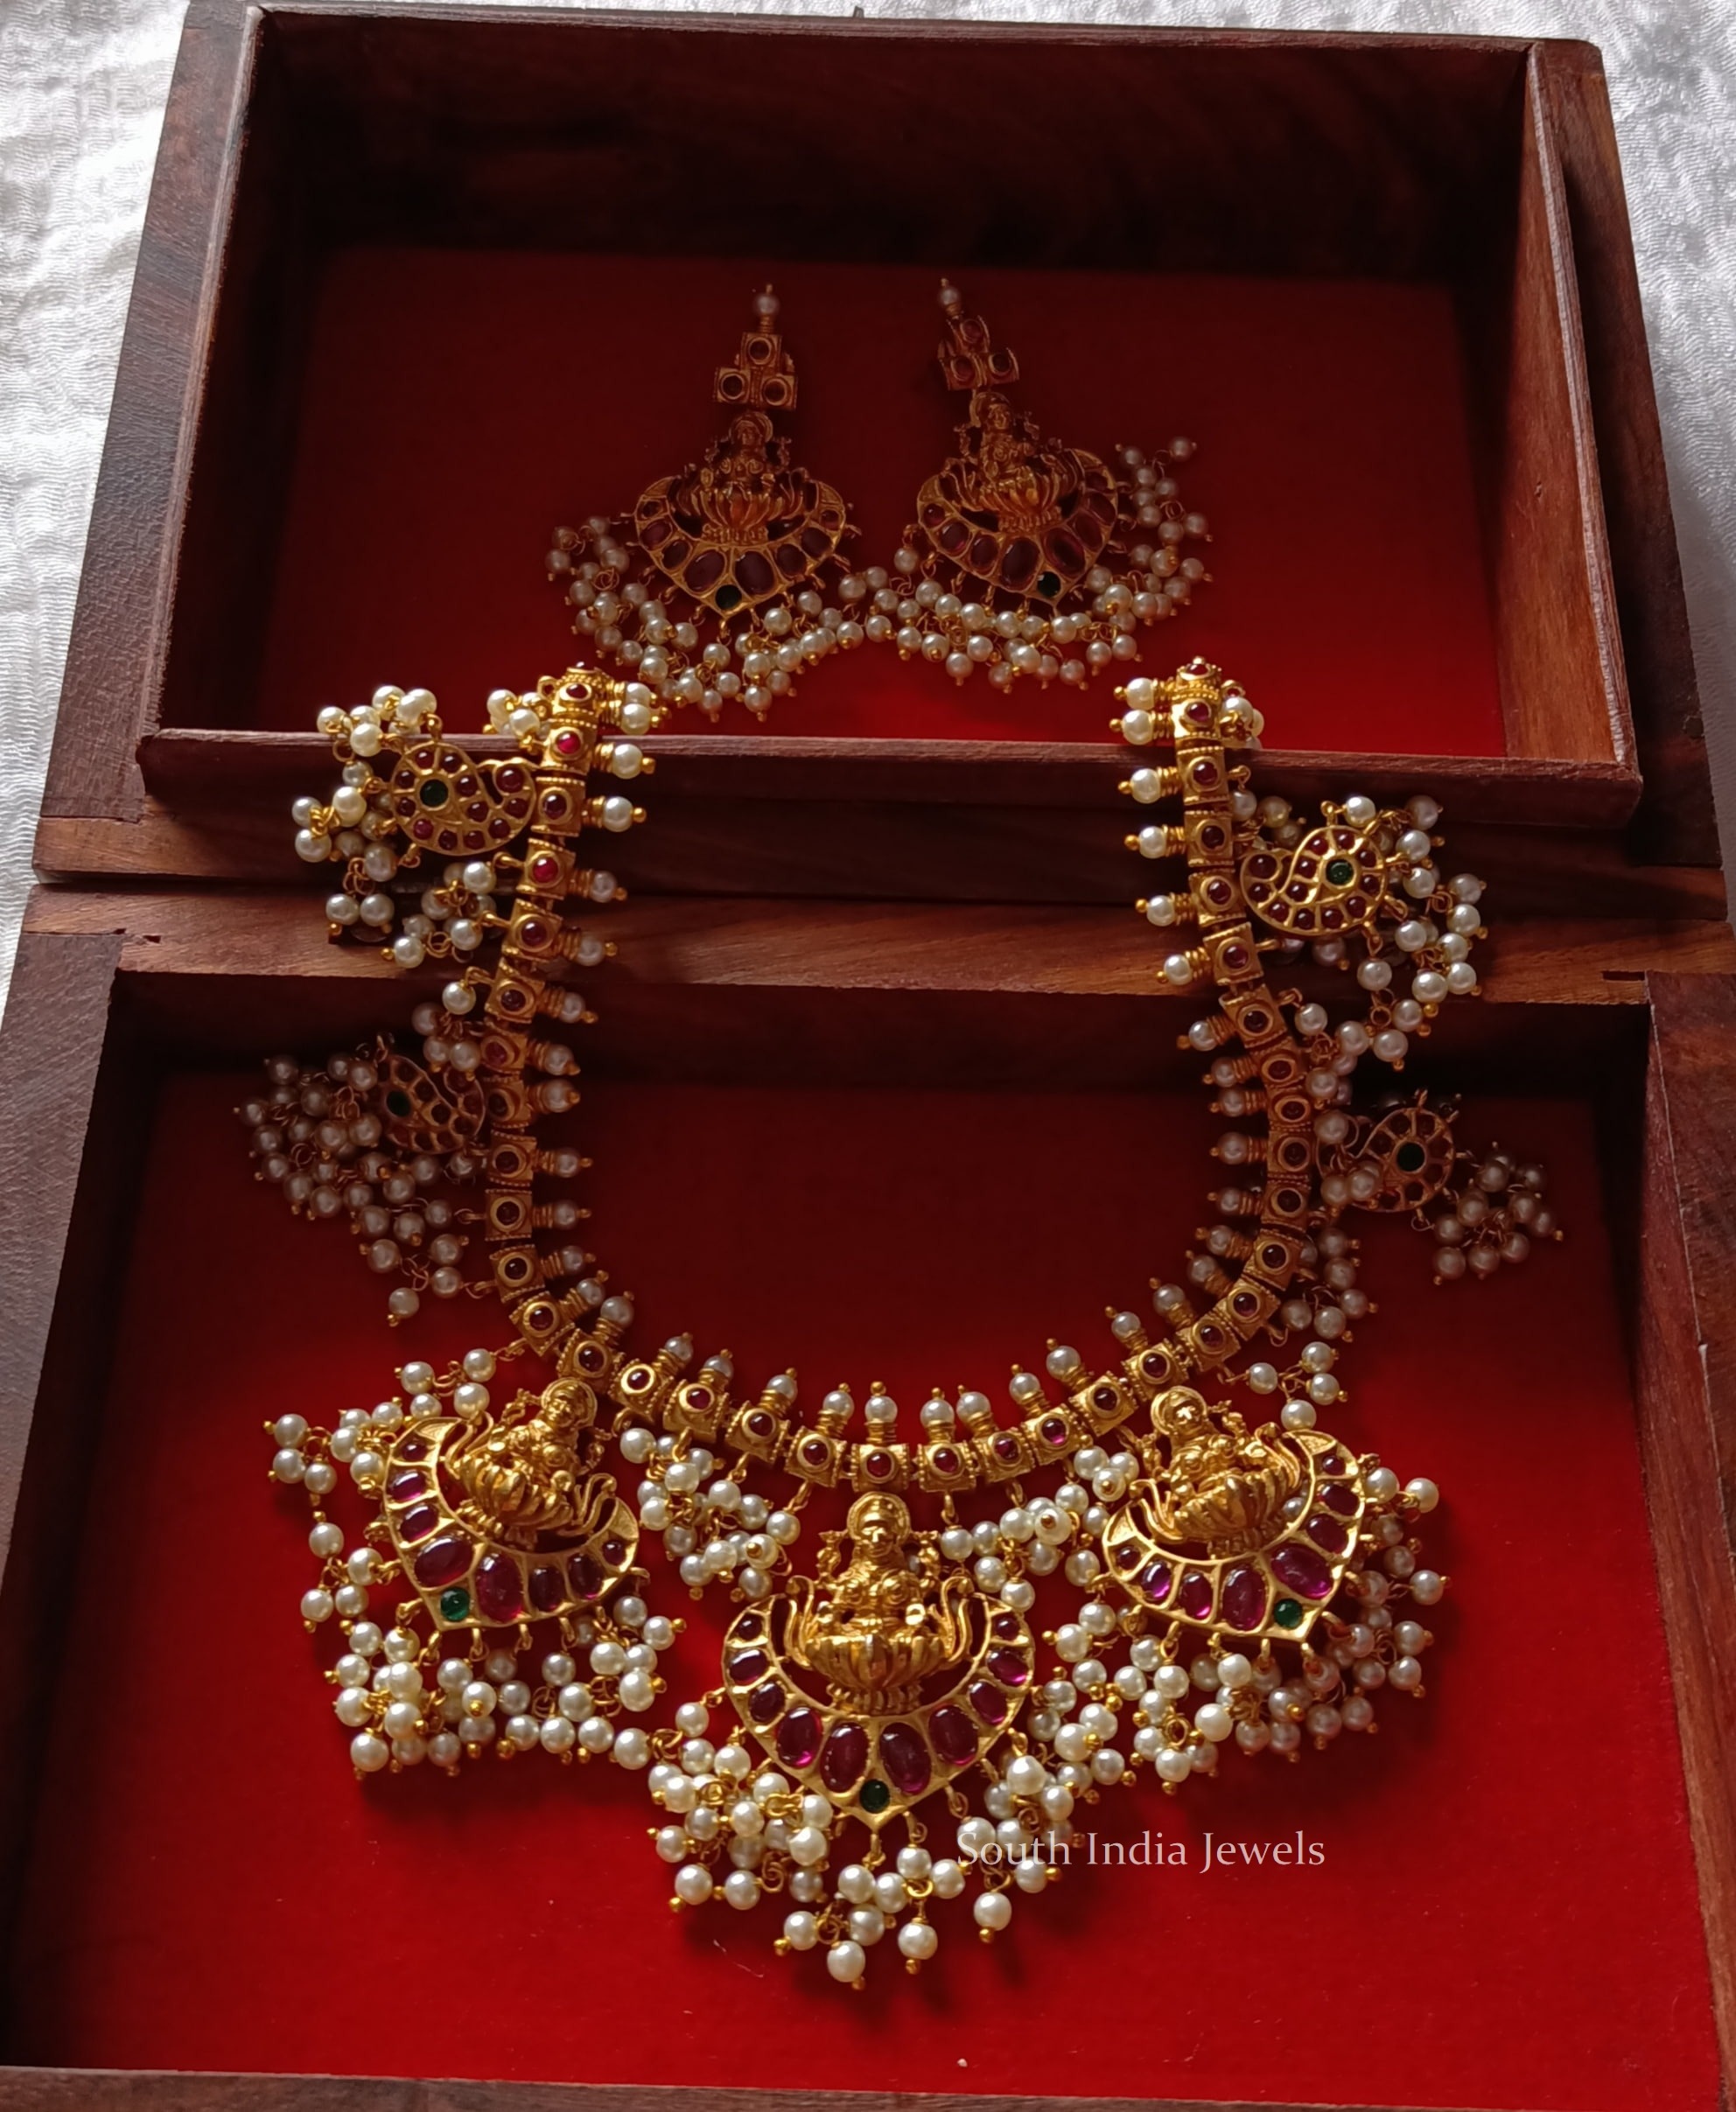 Grand Lakshmi Guttapusalu Necklace - South India Jewels